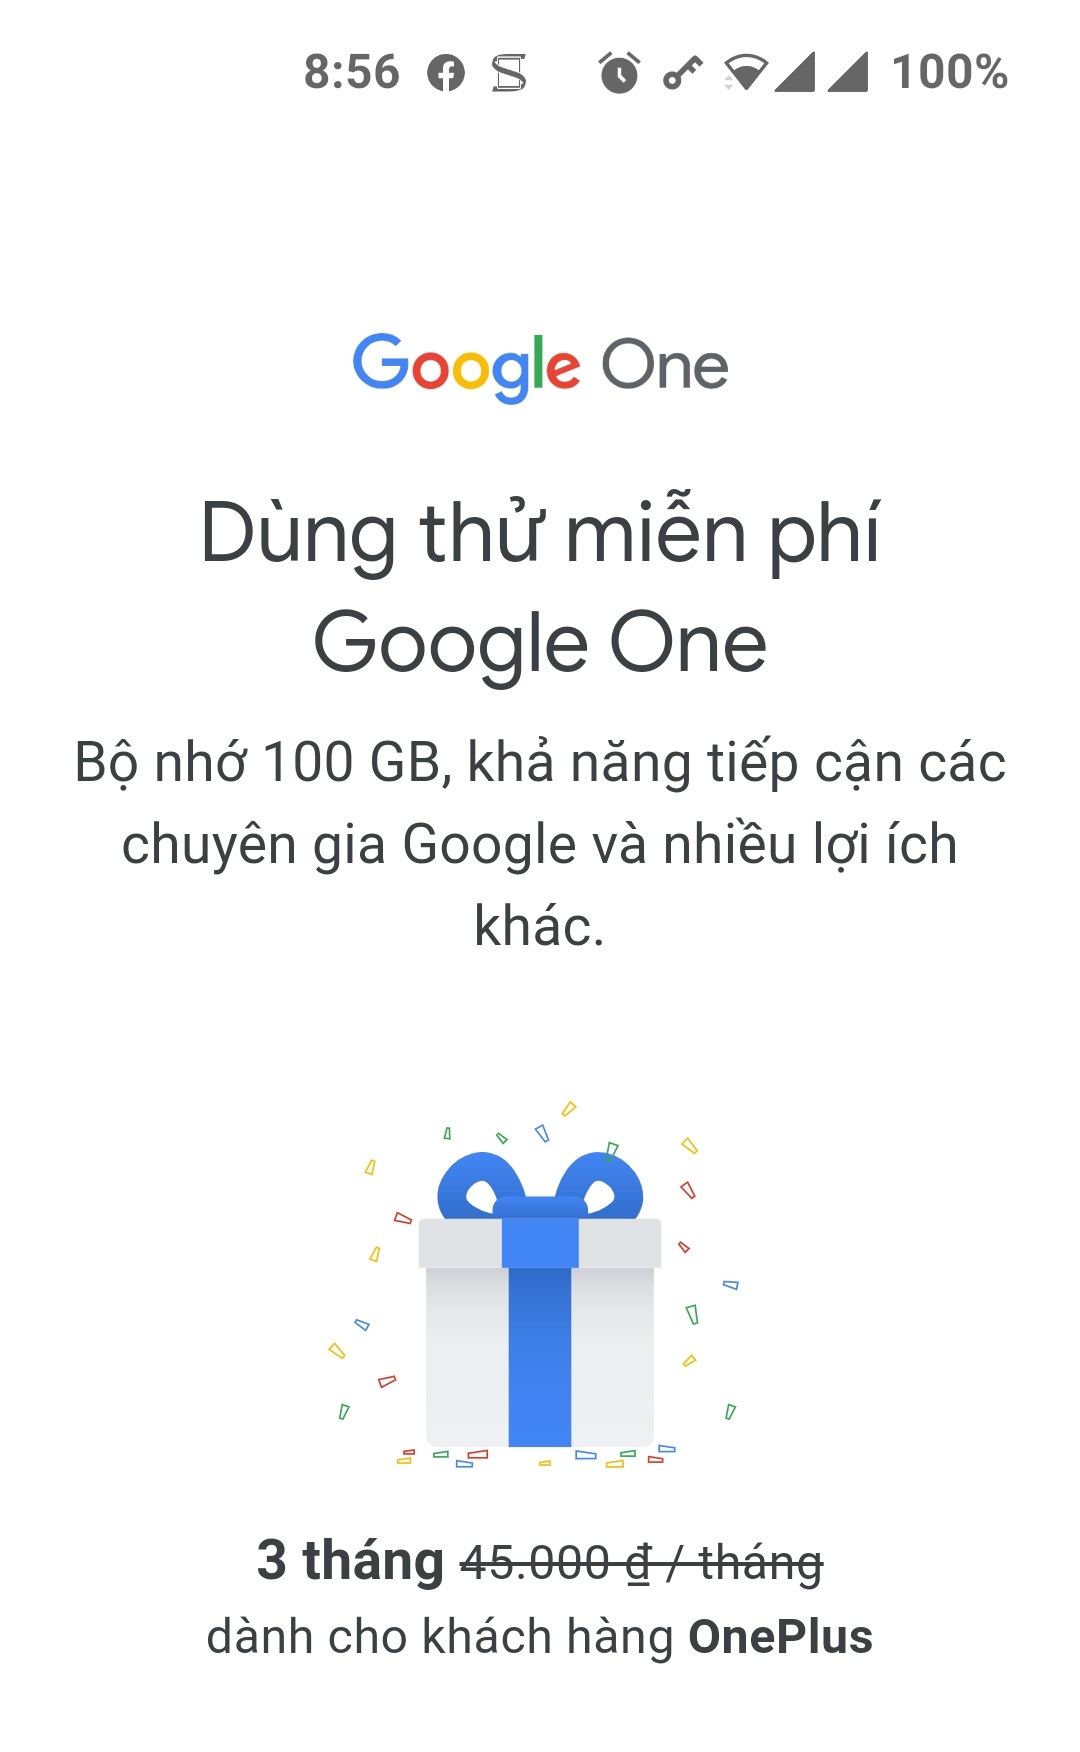 Anh em cho mình hỏi chút về tài khoản Google One ạ